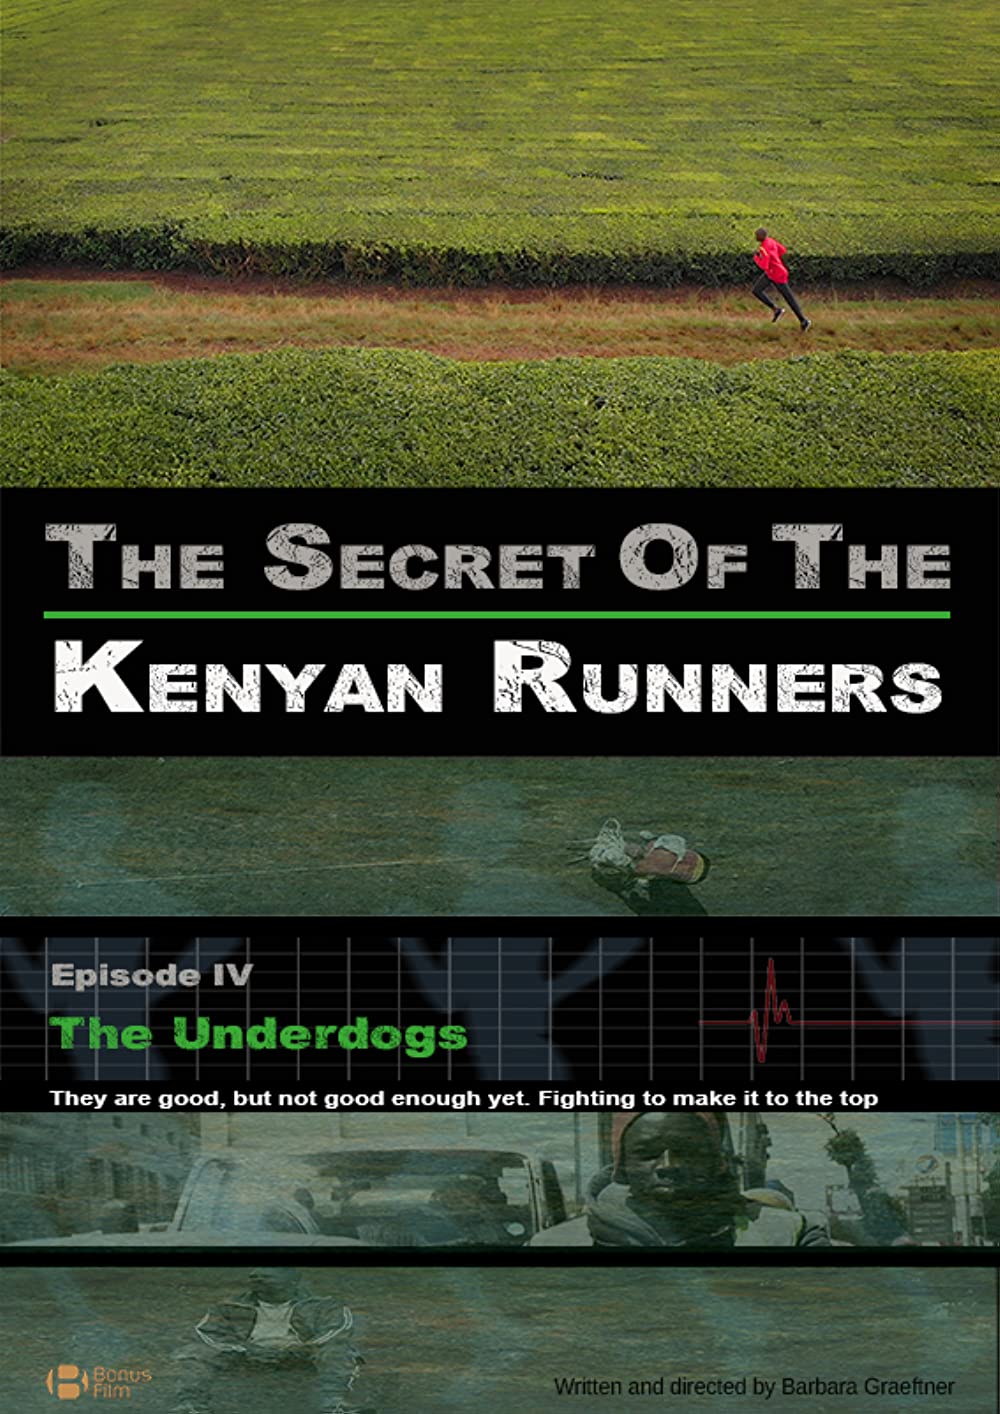 Filmbeschreibung zu The Secret of the Kenyan Runners